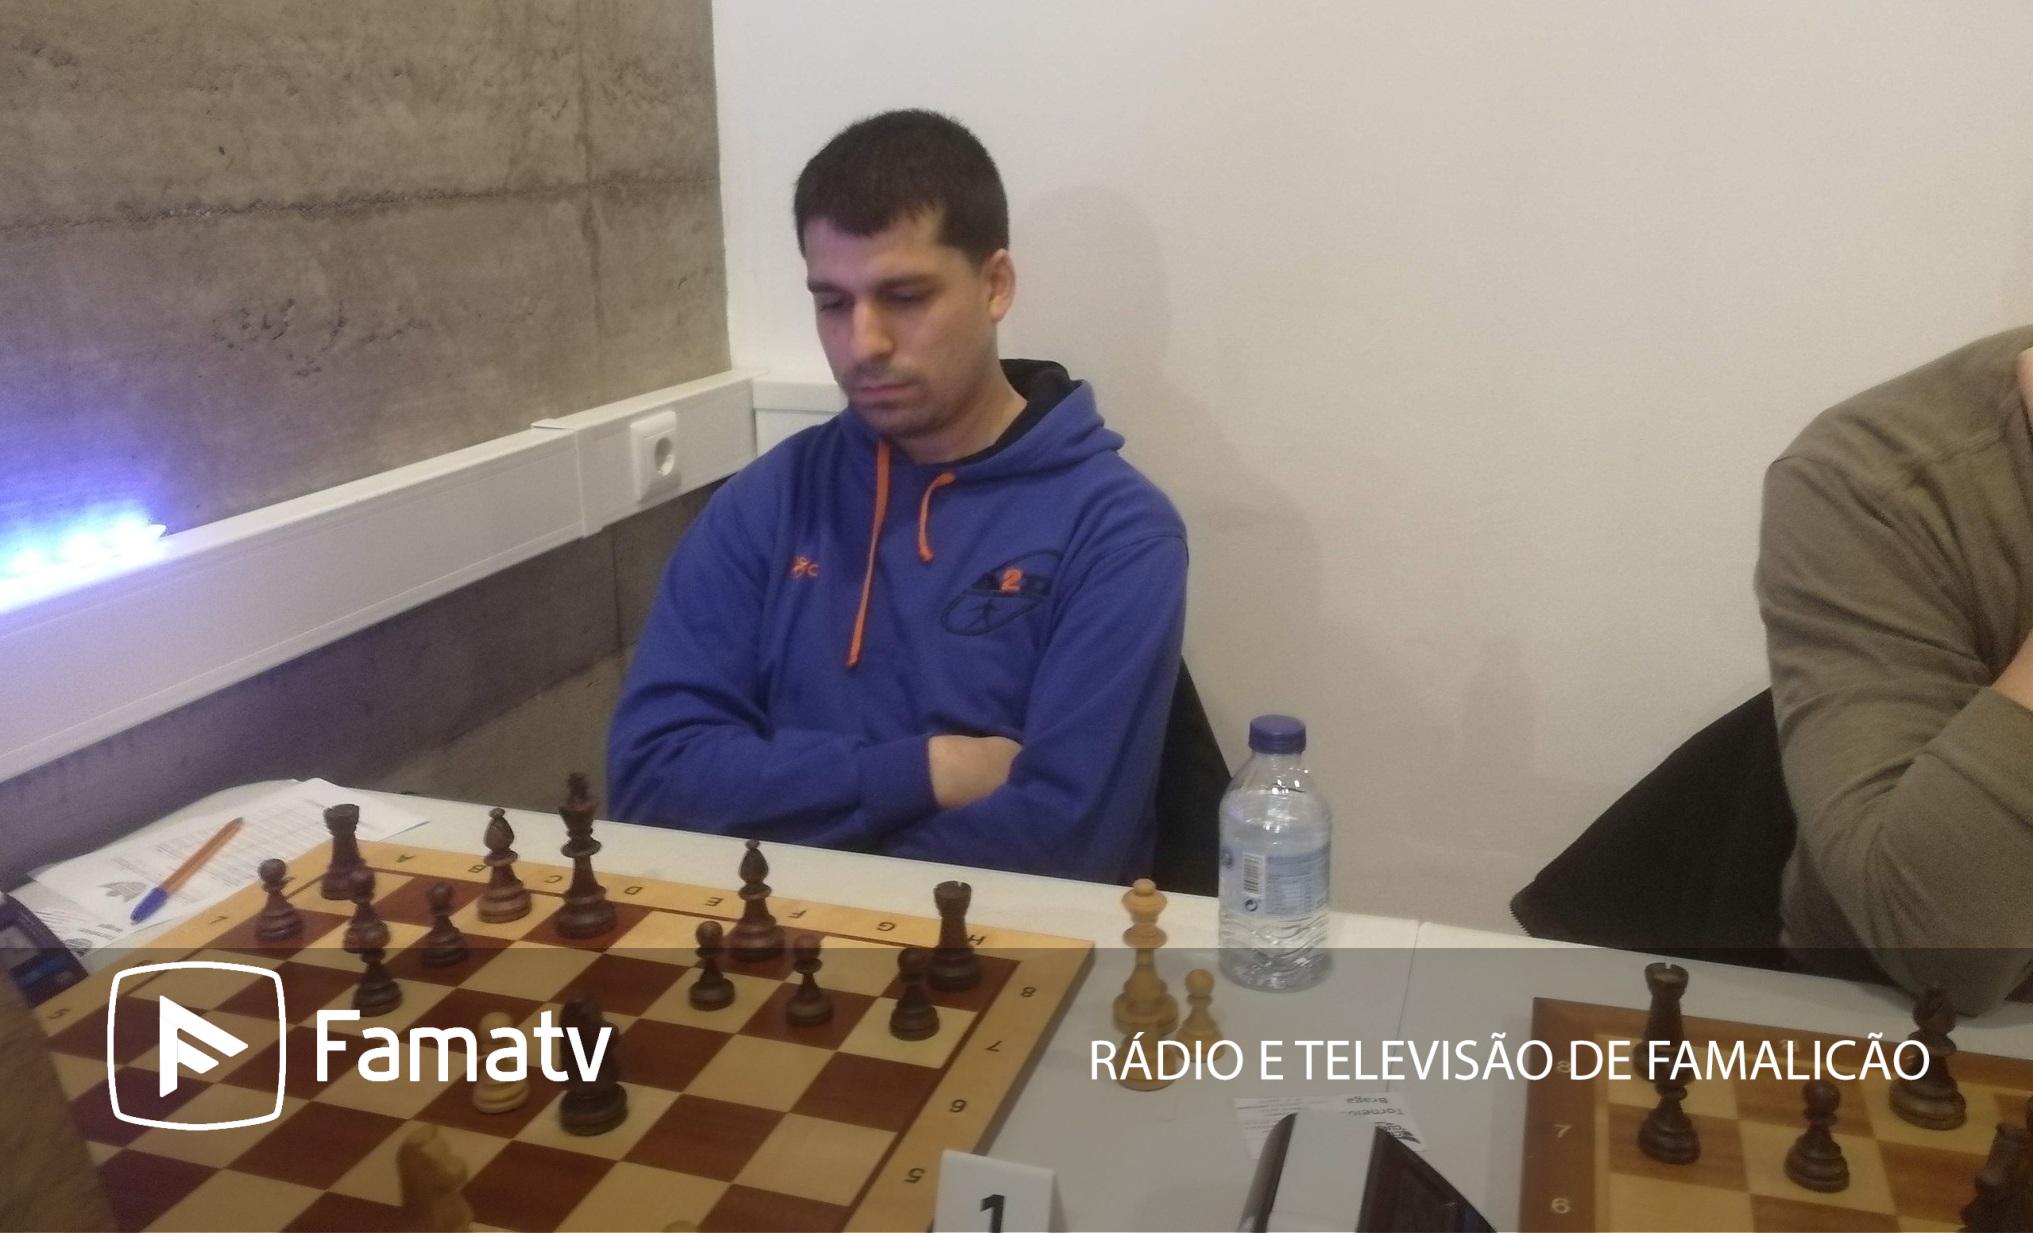 João Afonso da Didáxis representa Famalicão no Campeonato Mundial de Jovens  de xadrez » Fama Rádio e Televisão